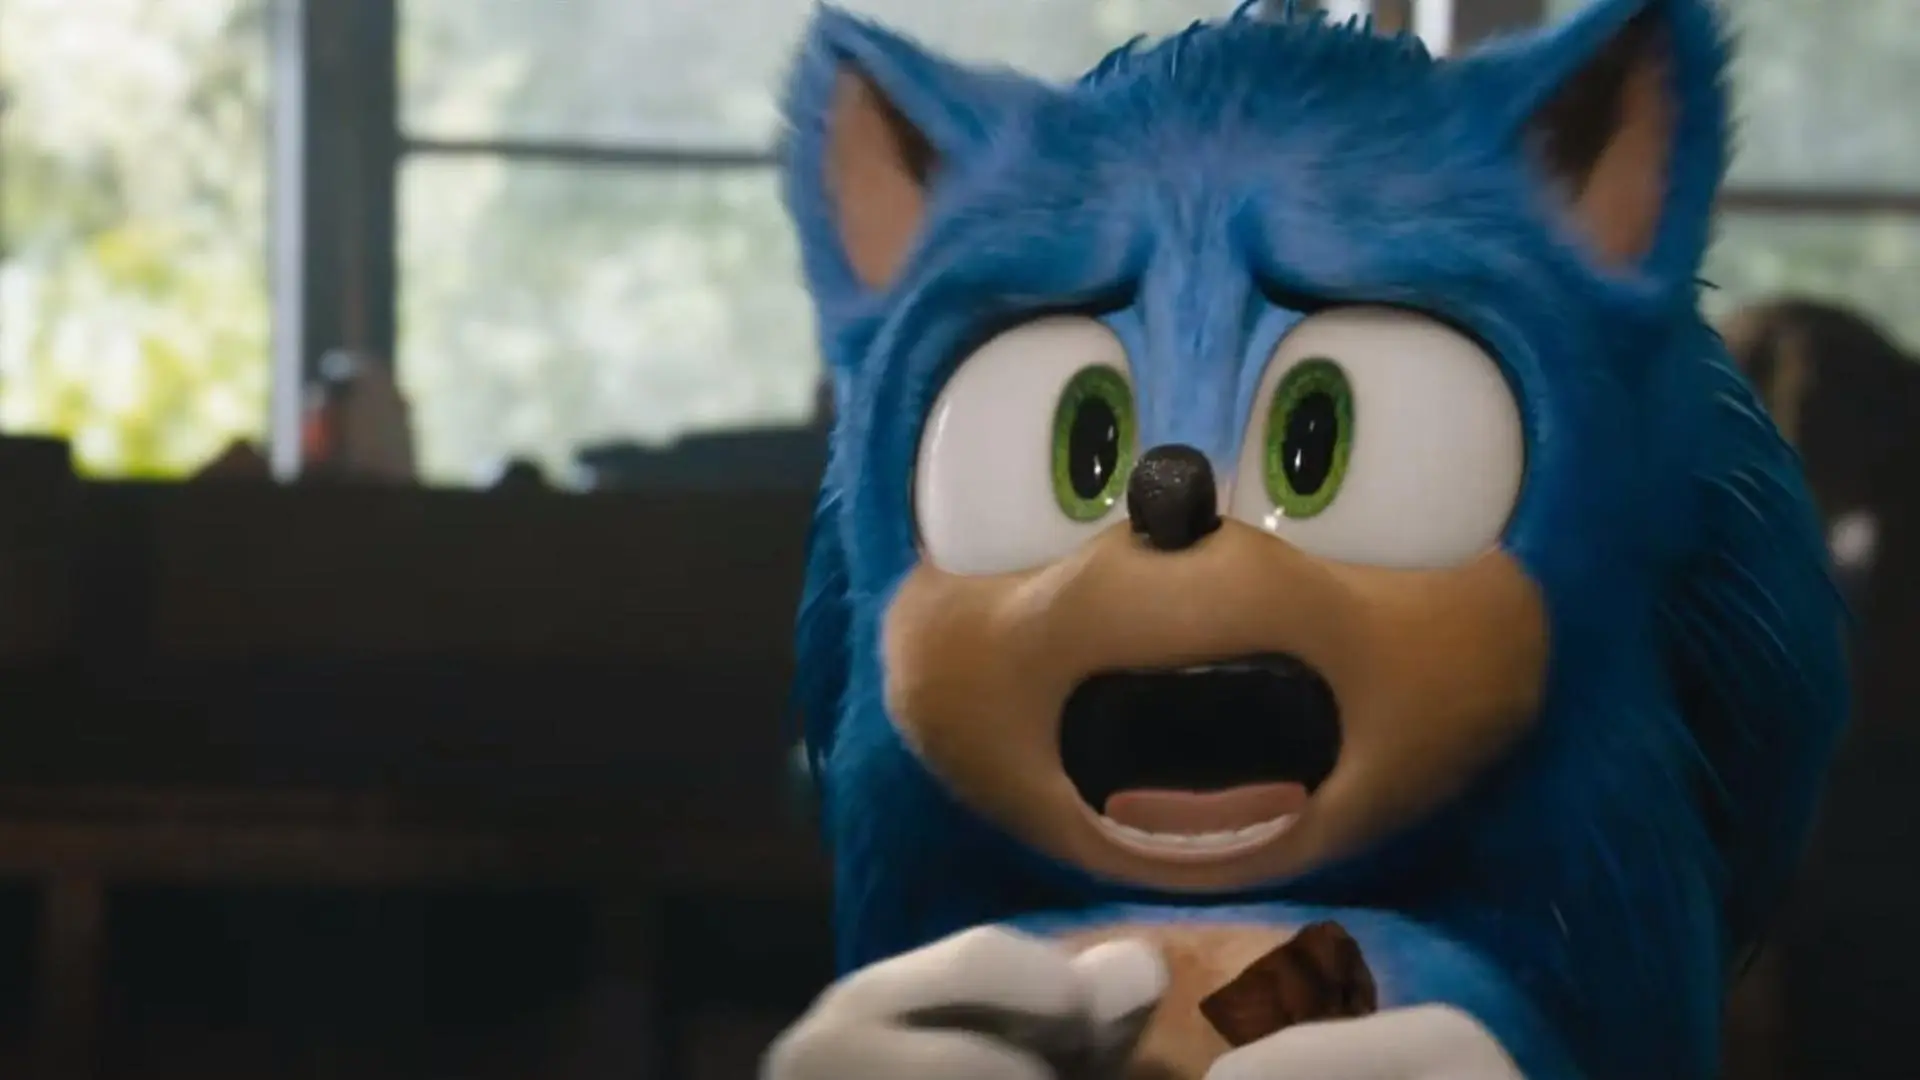 Criador de Sonic ainda não está satisfeito com design do personagem no filme